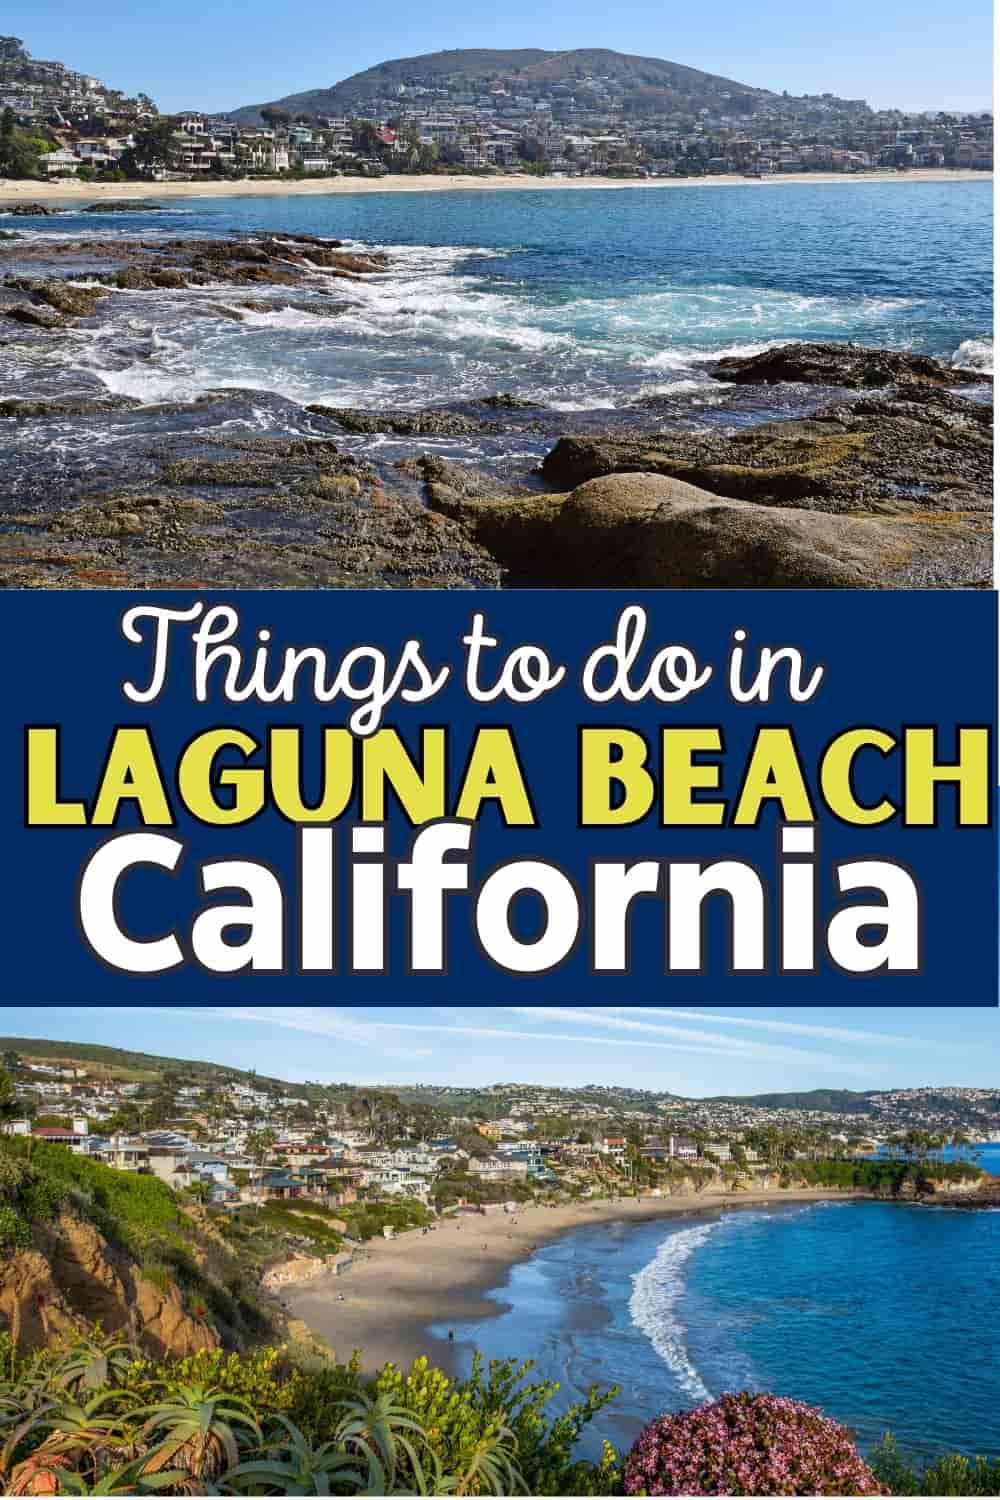 Things to do in Laguna Beach